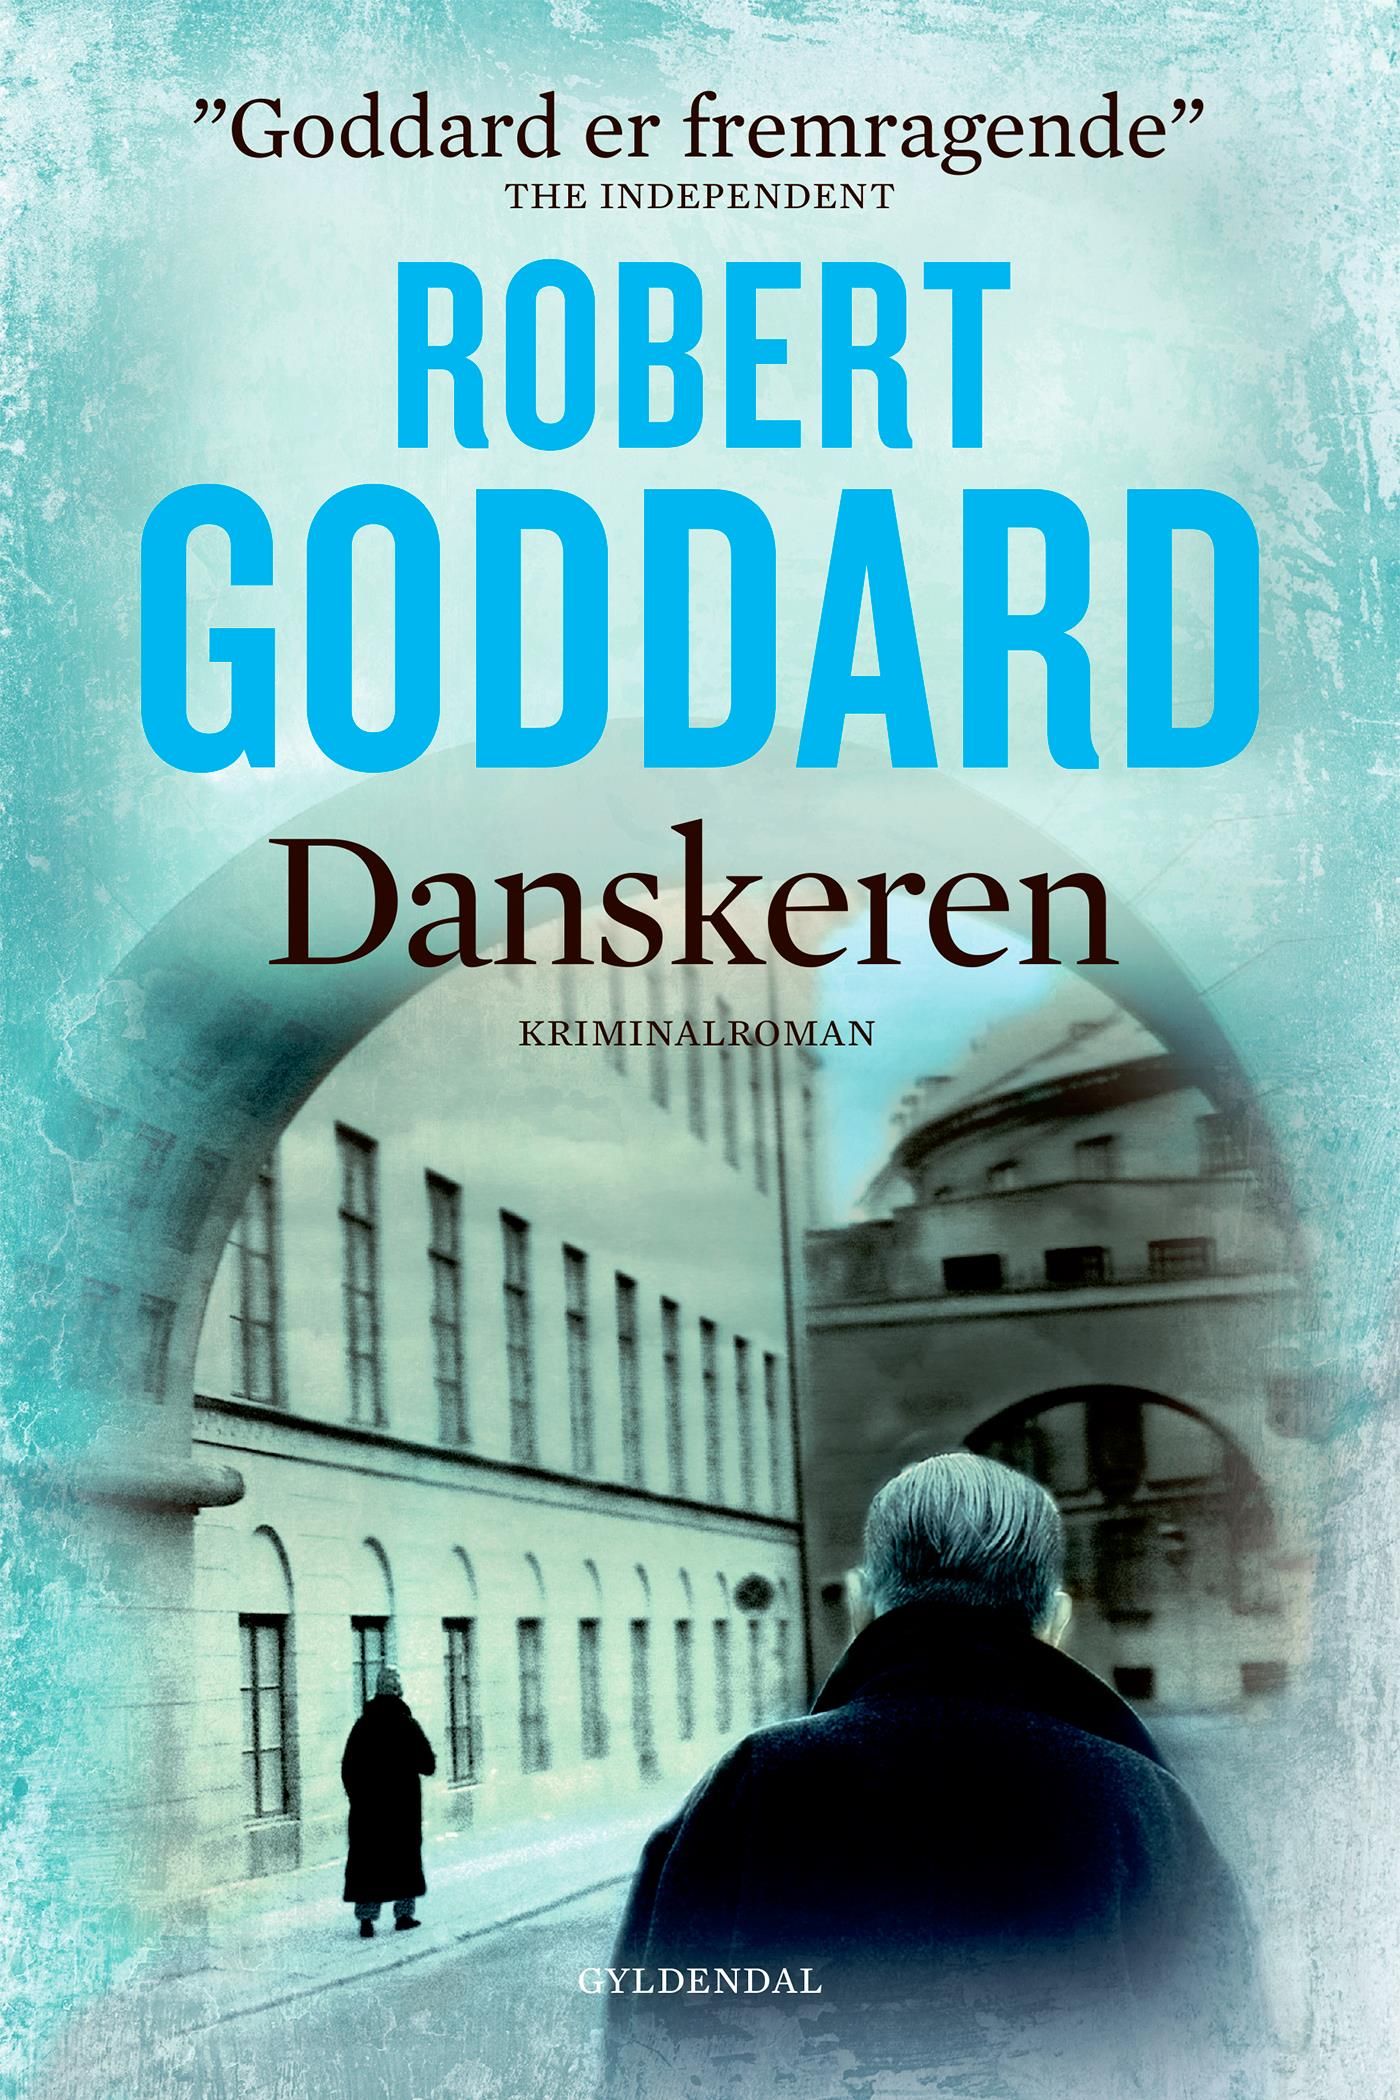 Danskeren, e-bok av Robert Goddard